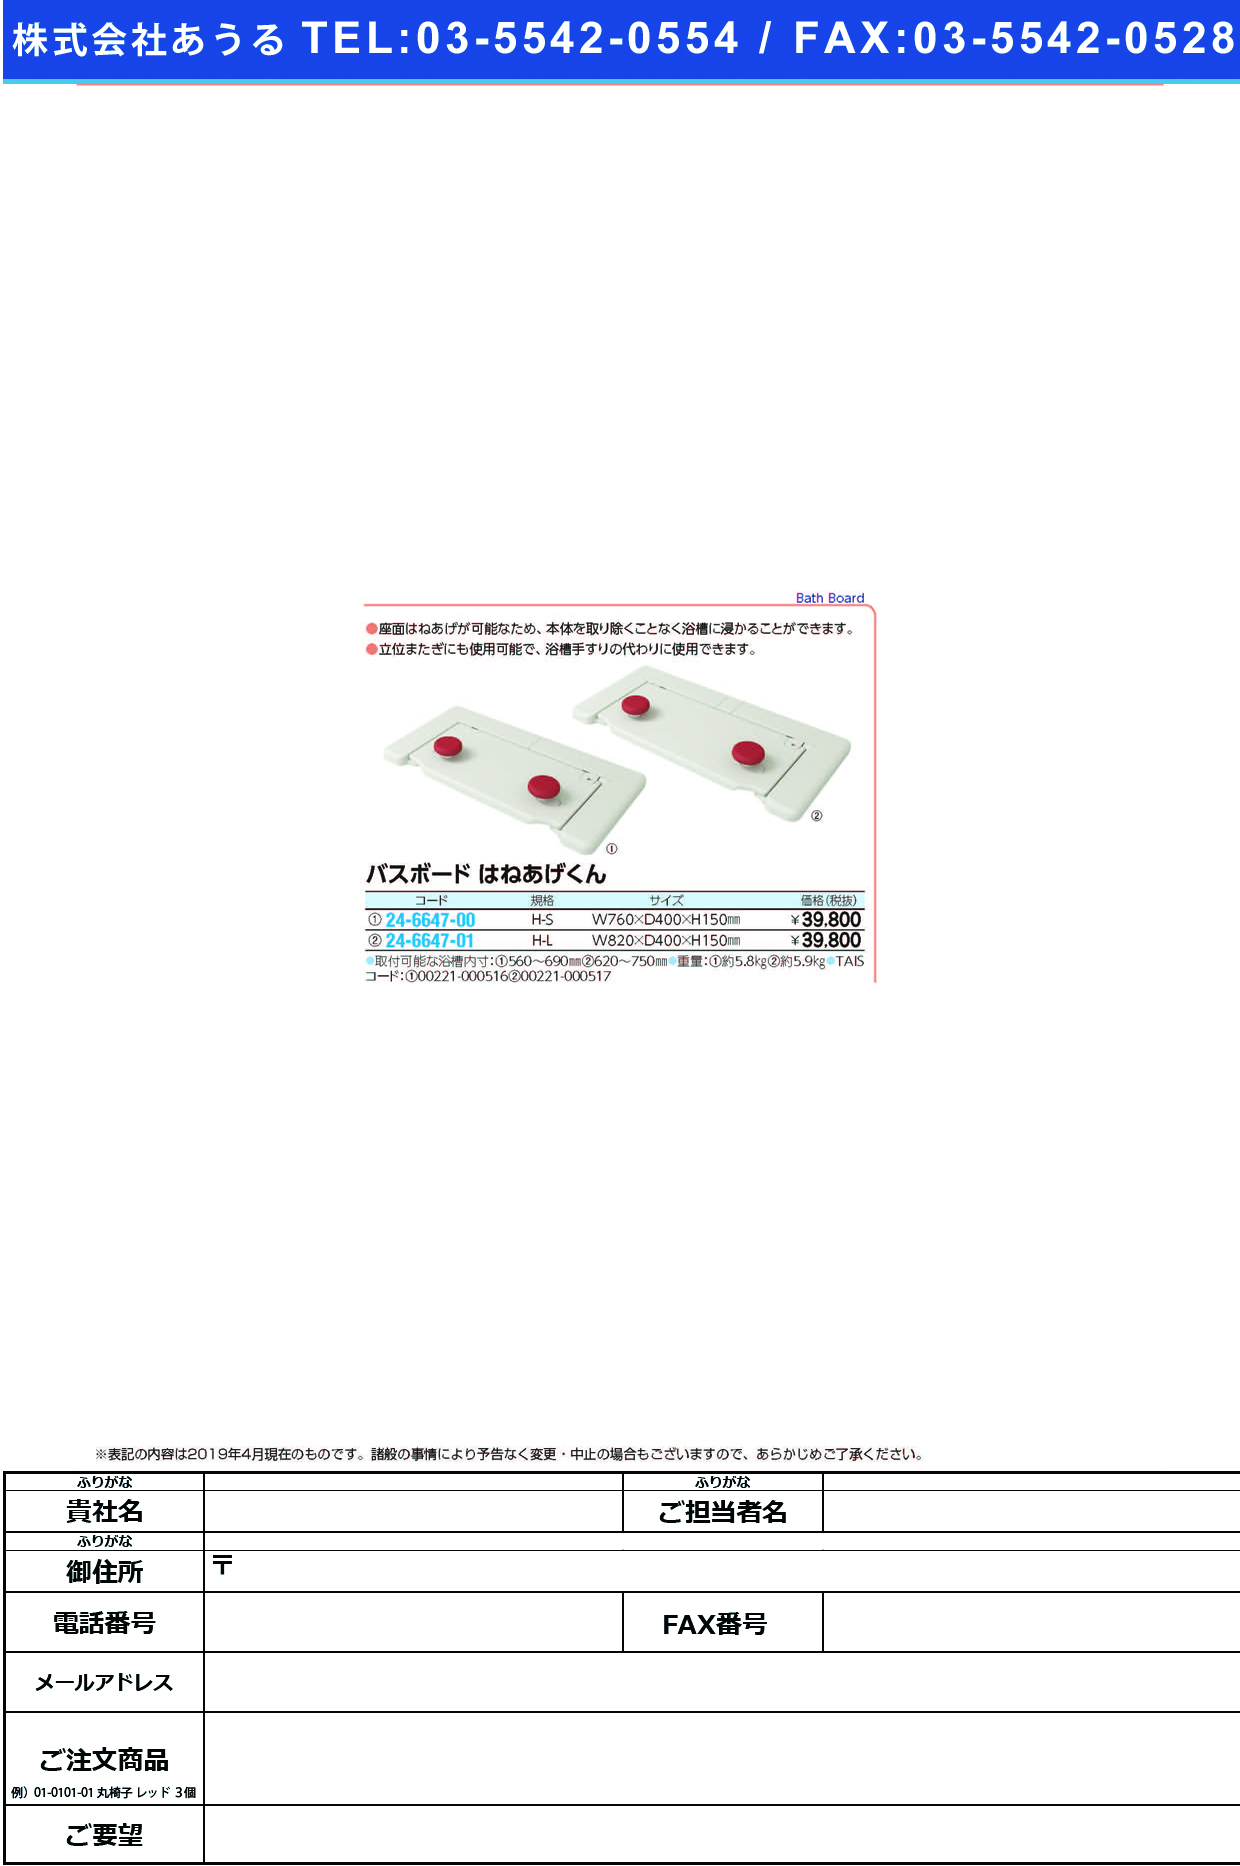 (24-6647-00)バスボードＨ−Ｓはねあげくん 535-102 ﾊﾞｽﾎﾞｰﾄﾞH-S(アロン化成)【1台単位】【2019年カタログ商品】